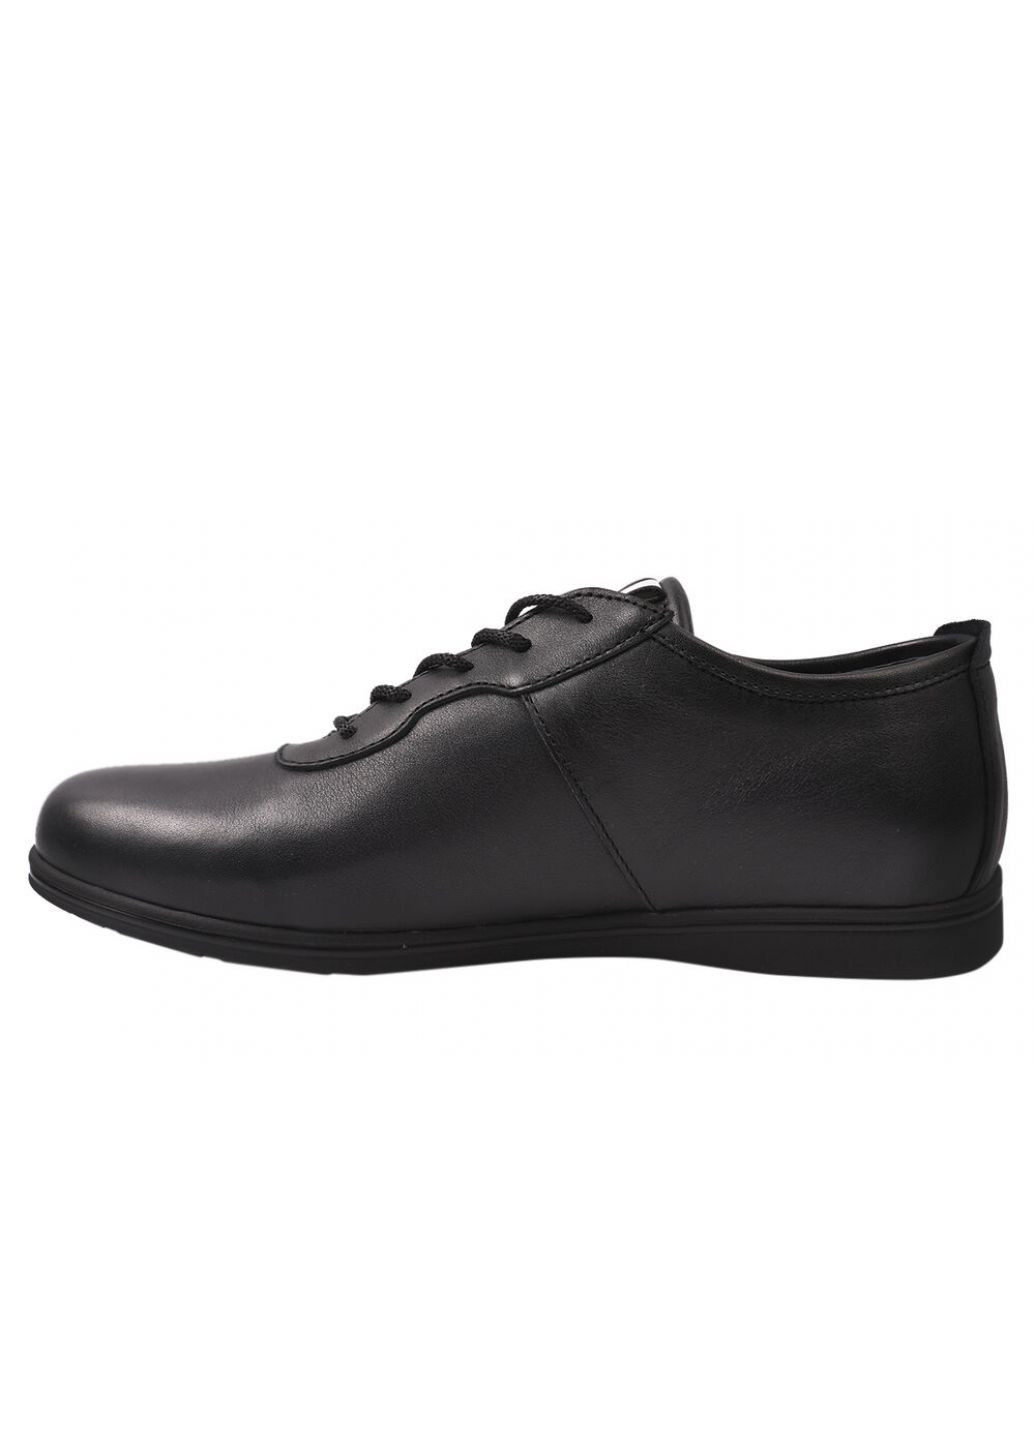 Черные кроссовки мужские из натуральной кожи, на низком ходу, на шнуровке, черные, украина Brave 168-20/21DTC